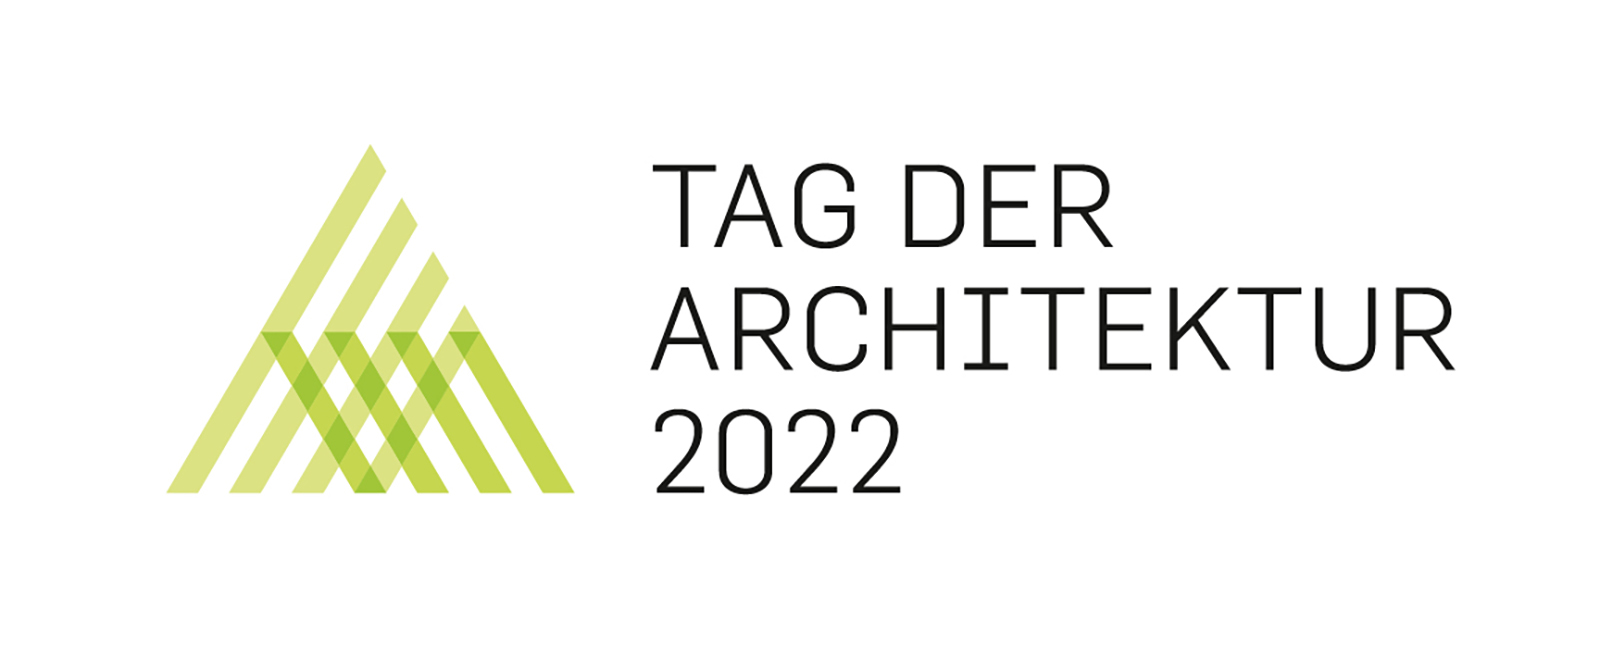 Tag der Architektur 2022 FFM-ARCHITEKTEN